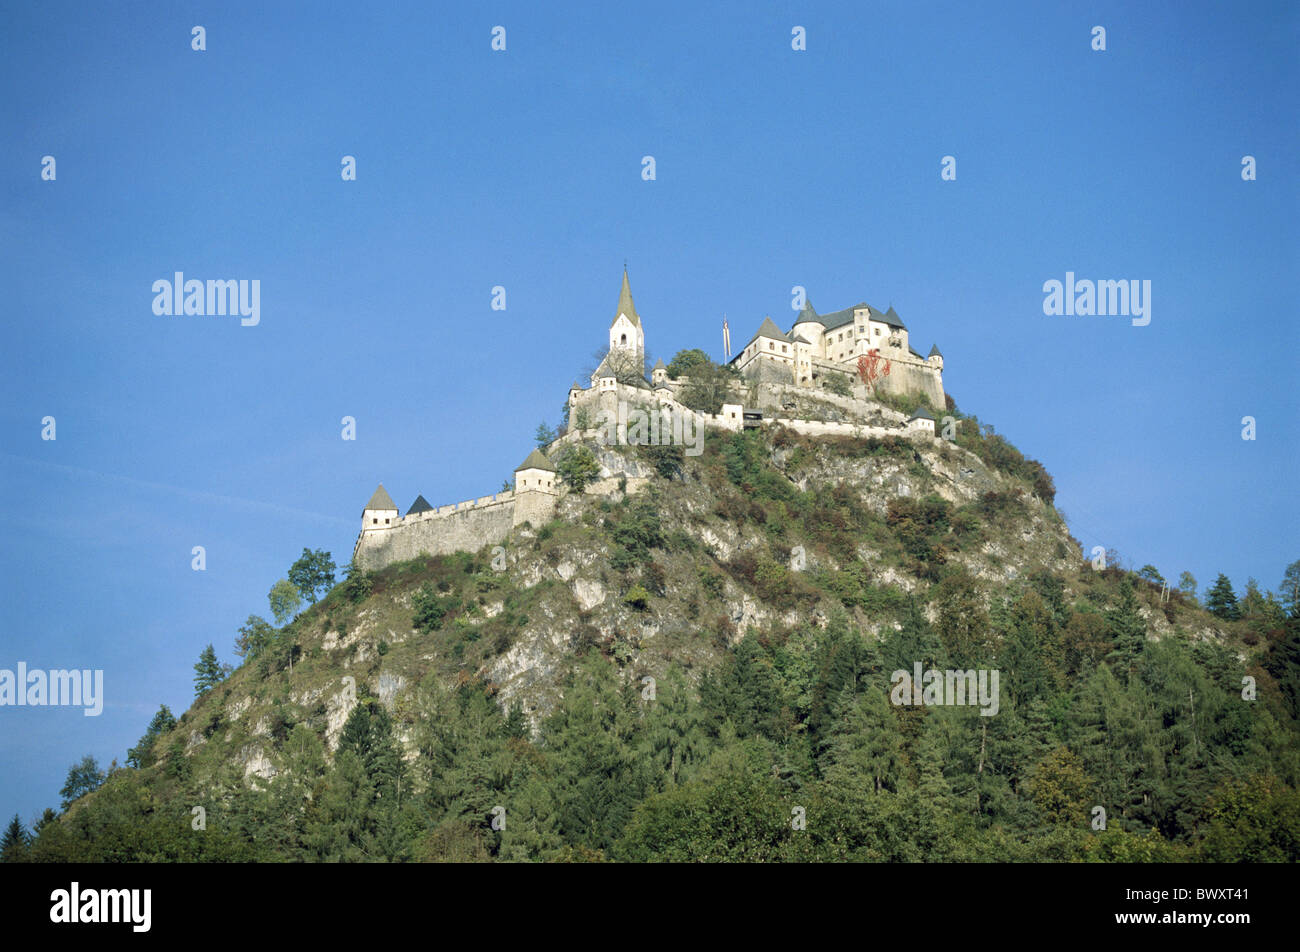 Blague de Pâques haut château construit 1571 1586 Carinthie Autriche Europe mountain Banque D'Images